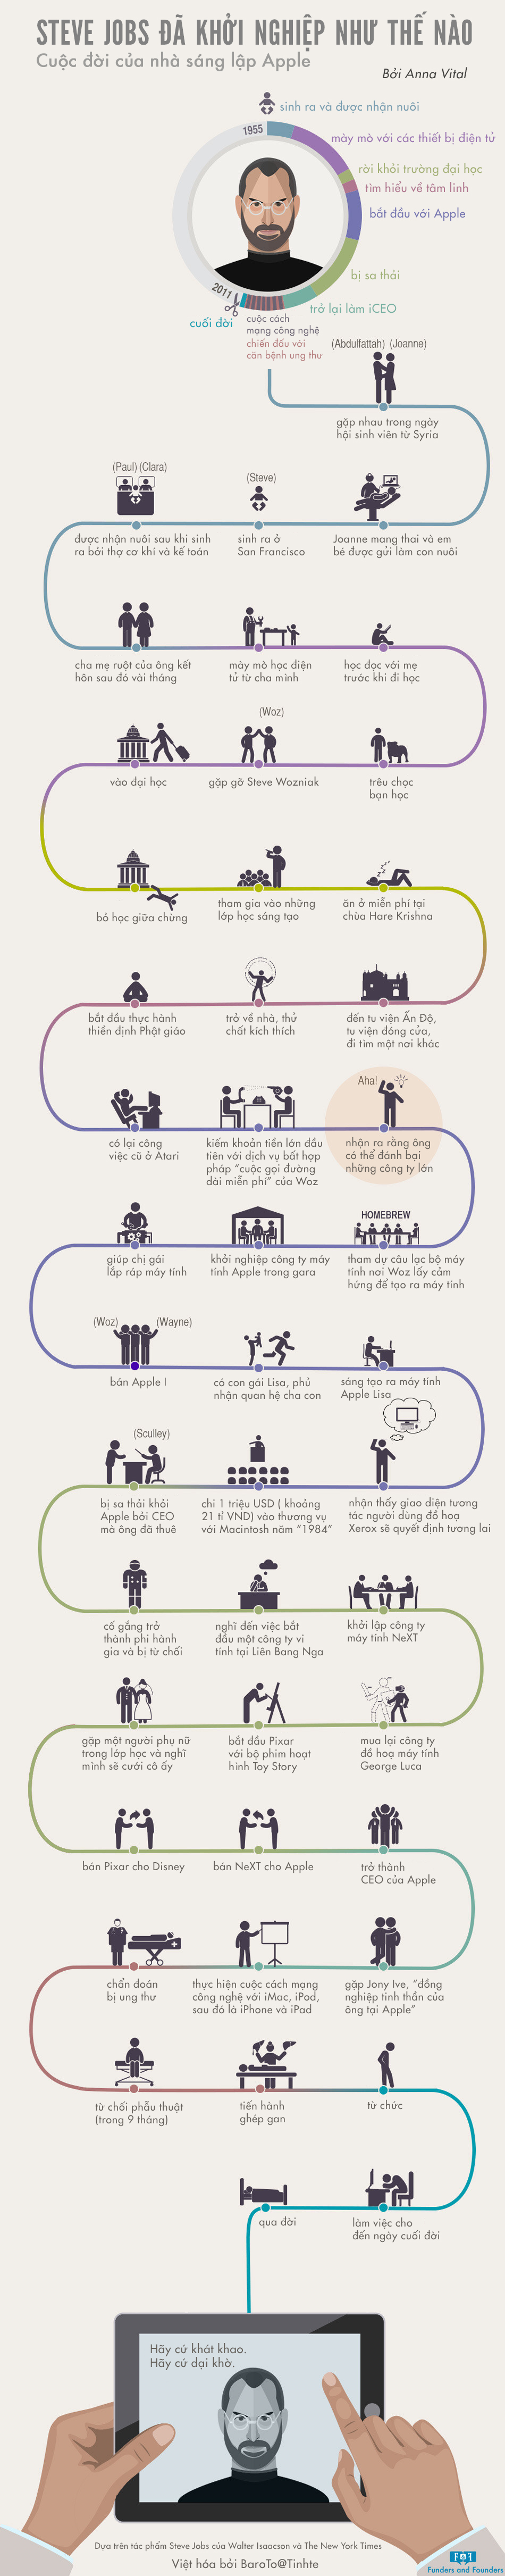 [INFOGRAPHIC] Steve Jobs đã khởi nghiệp như thế nào? - Cuộc đời của nhà sáng lập Apple